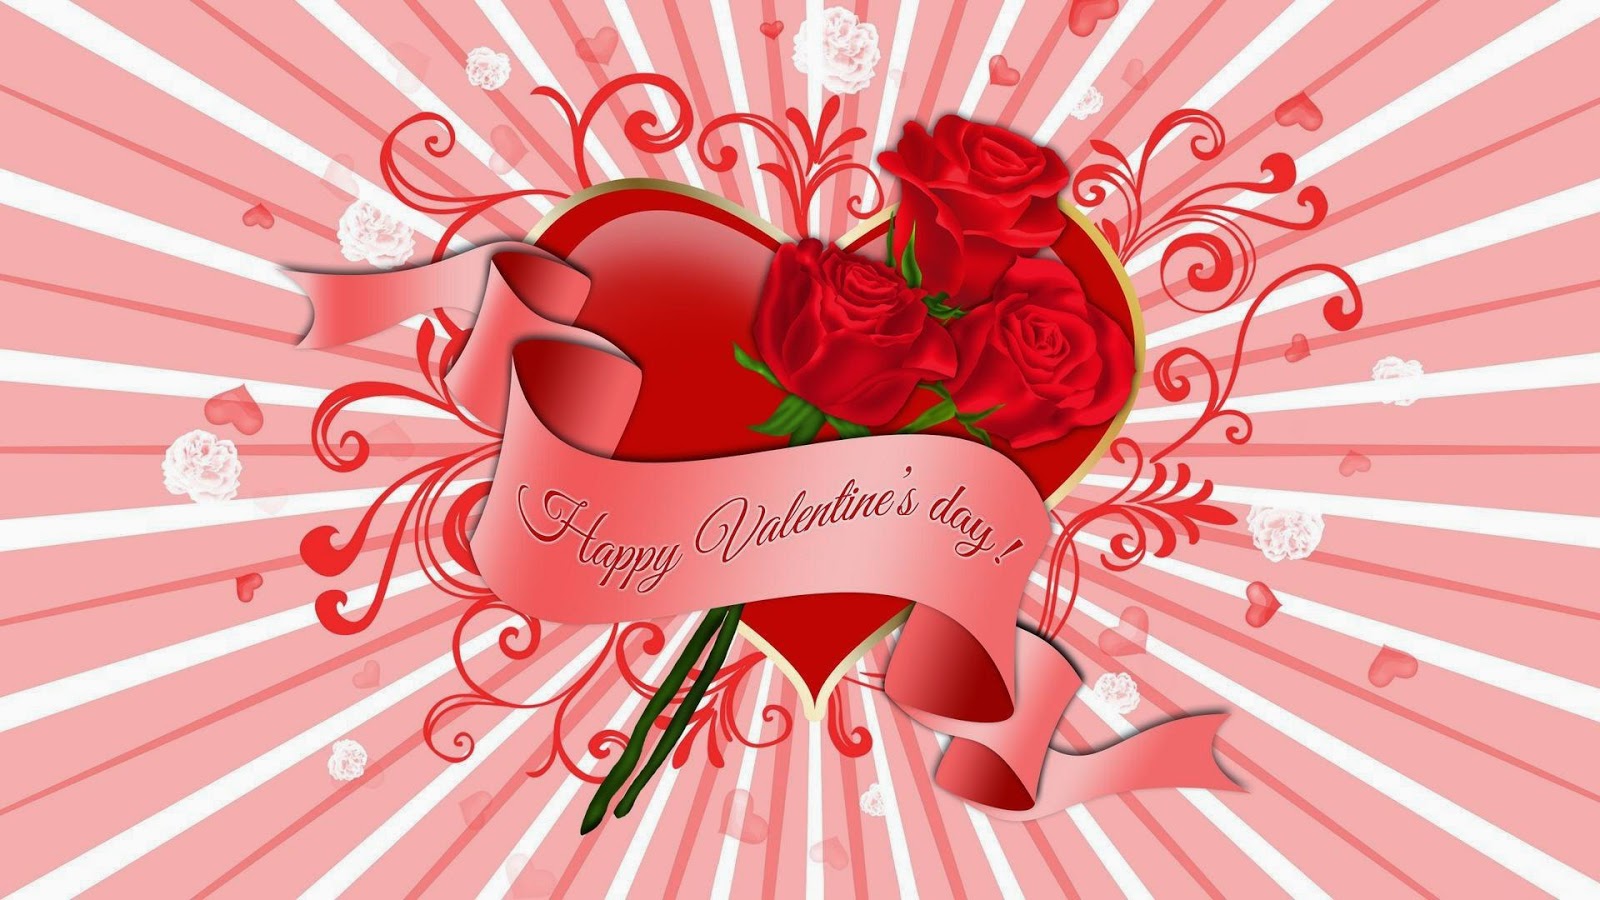 felice giorno di san valentino wallpaper hd,cuore,rosso,testo,san valentino,amore